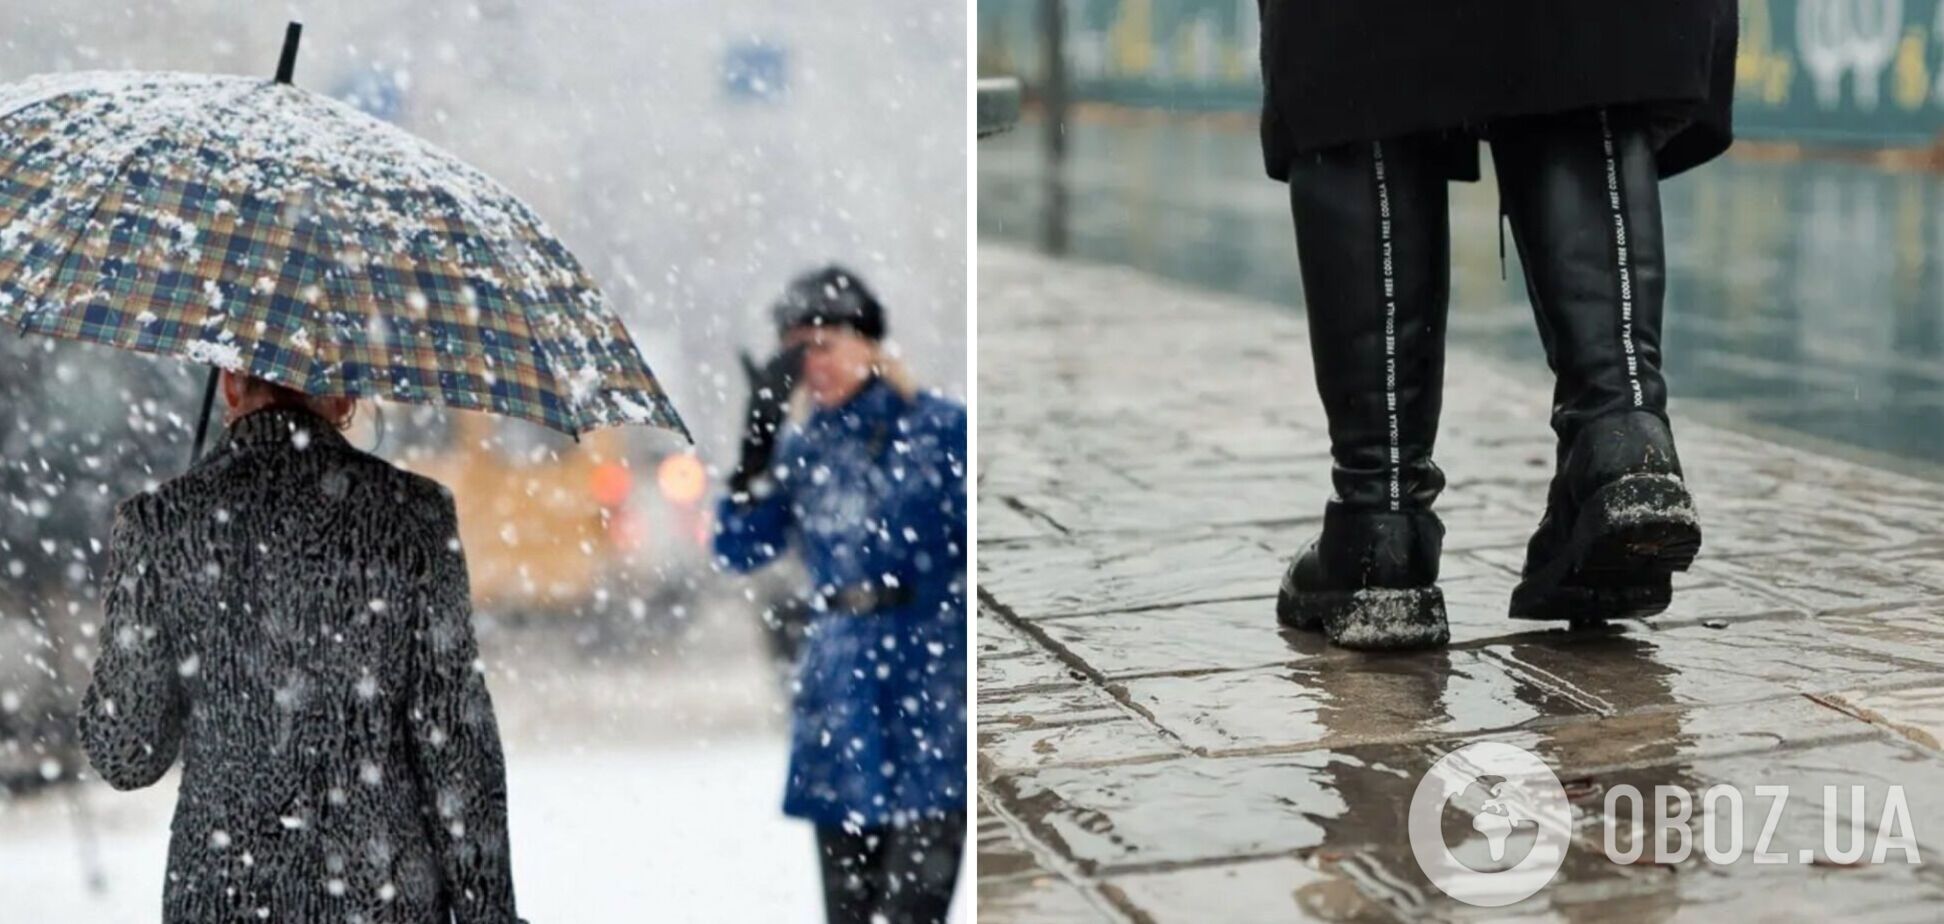 Ветер, снег с дождем, на дорогах гололедица: синоптики предупредили об опасной погоде во вторник. Карта